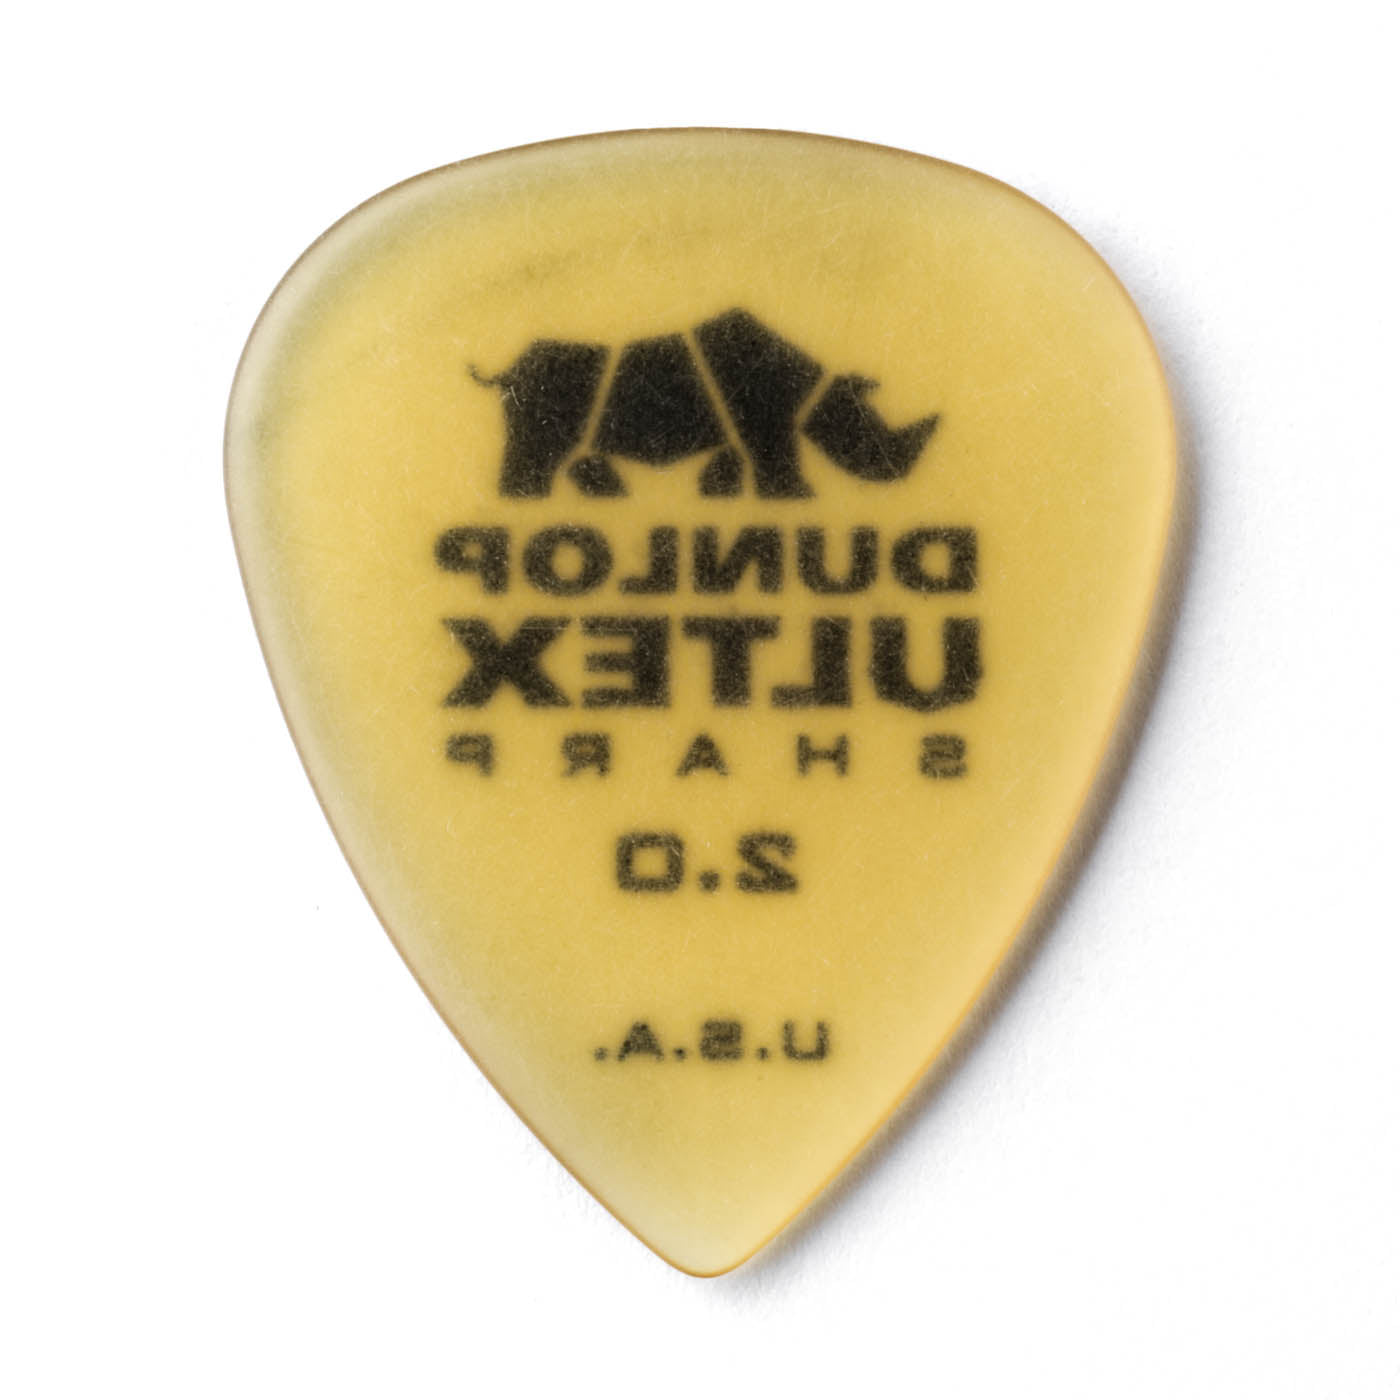 Dunlop 433-200 Ultex® Sharp Pick, 2.0MM